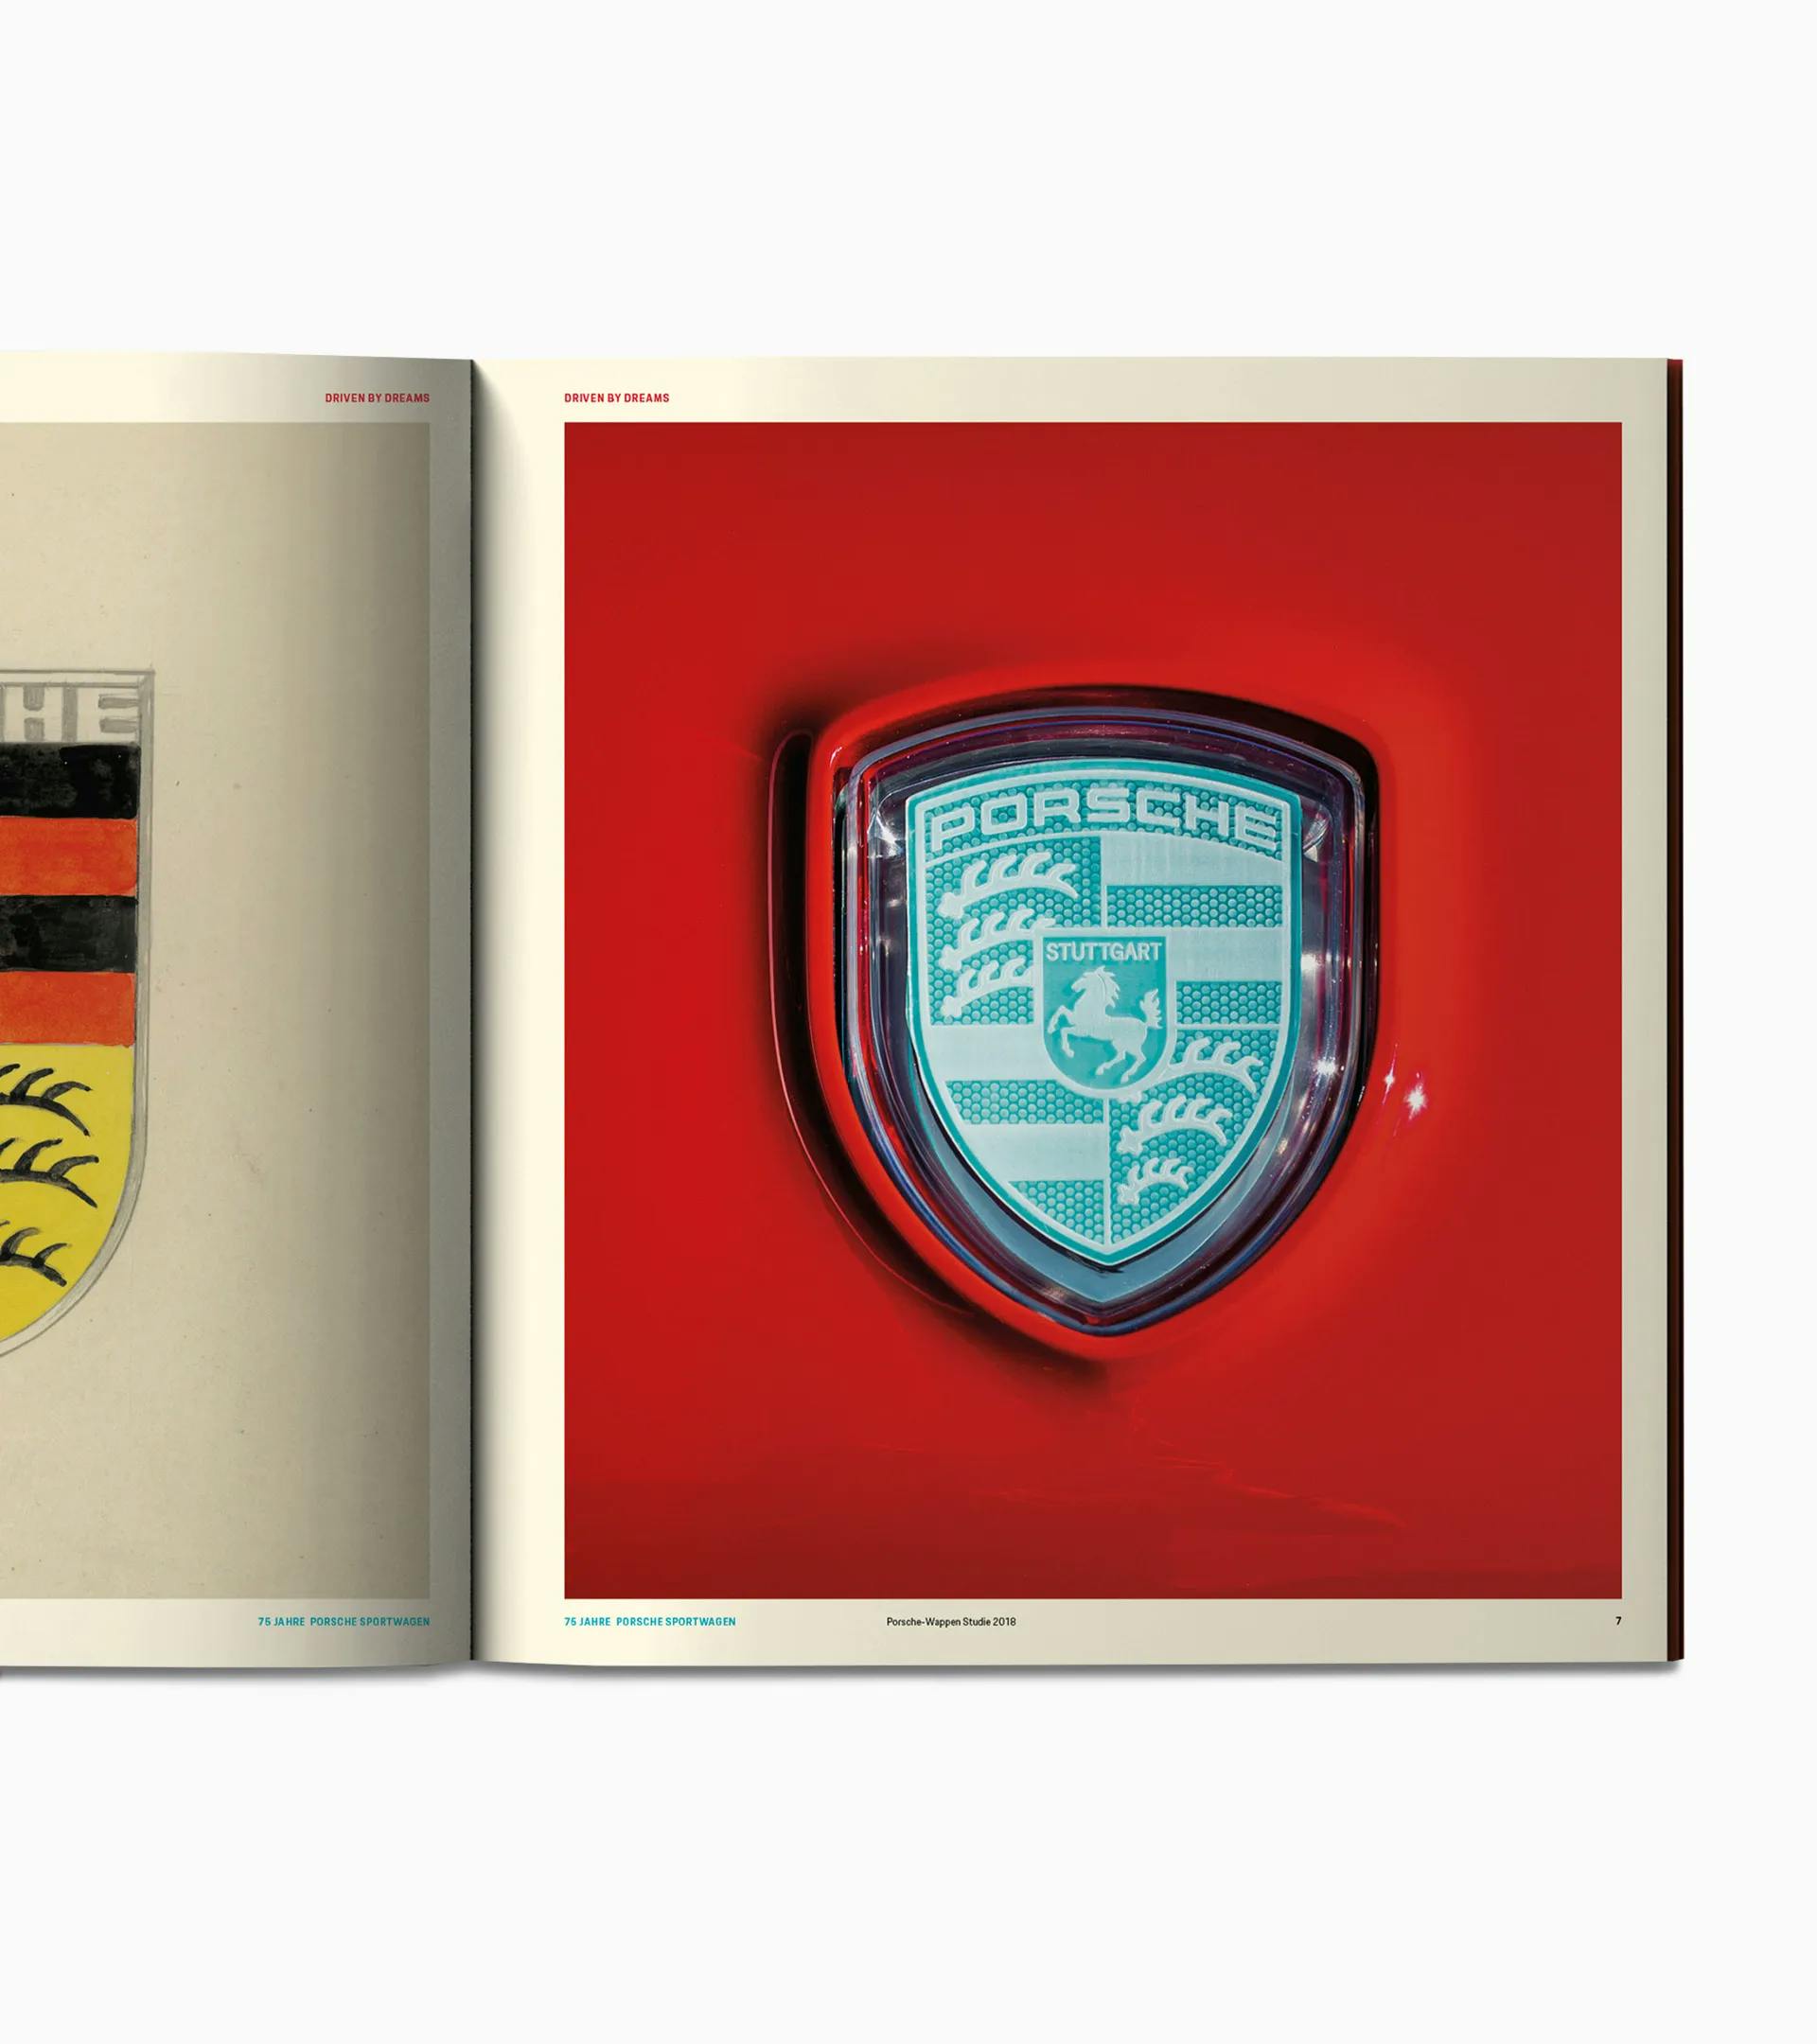 Boek 'Driven by dreams - 75 jaar Porsche sportwagens'  2